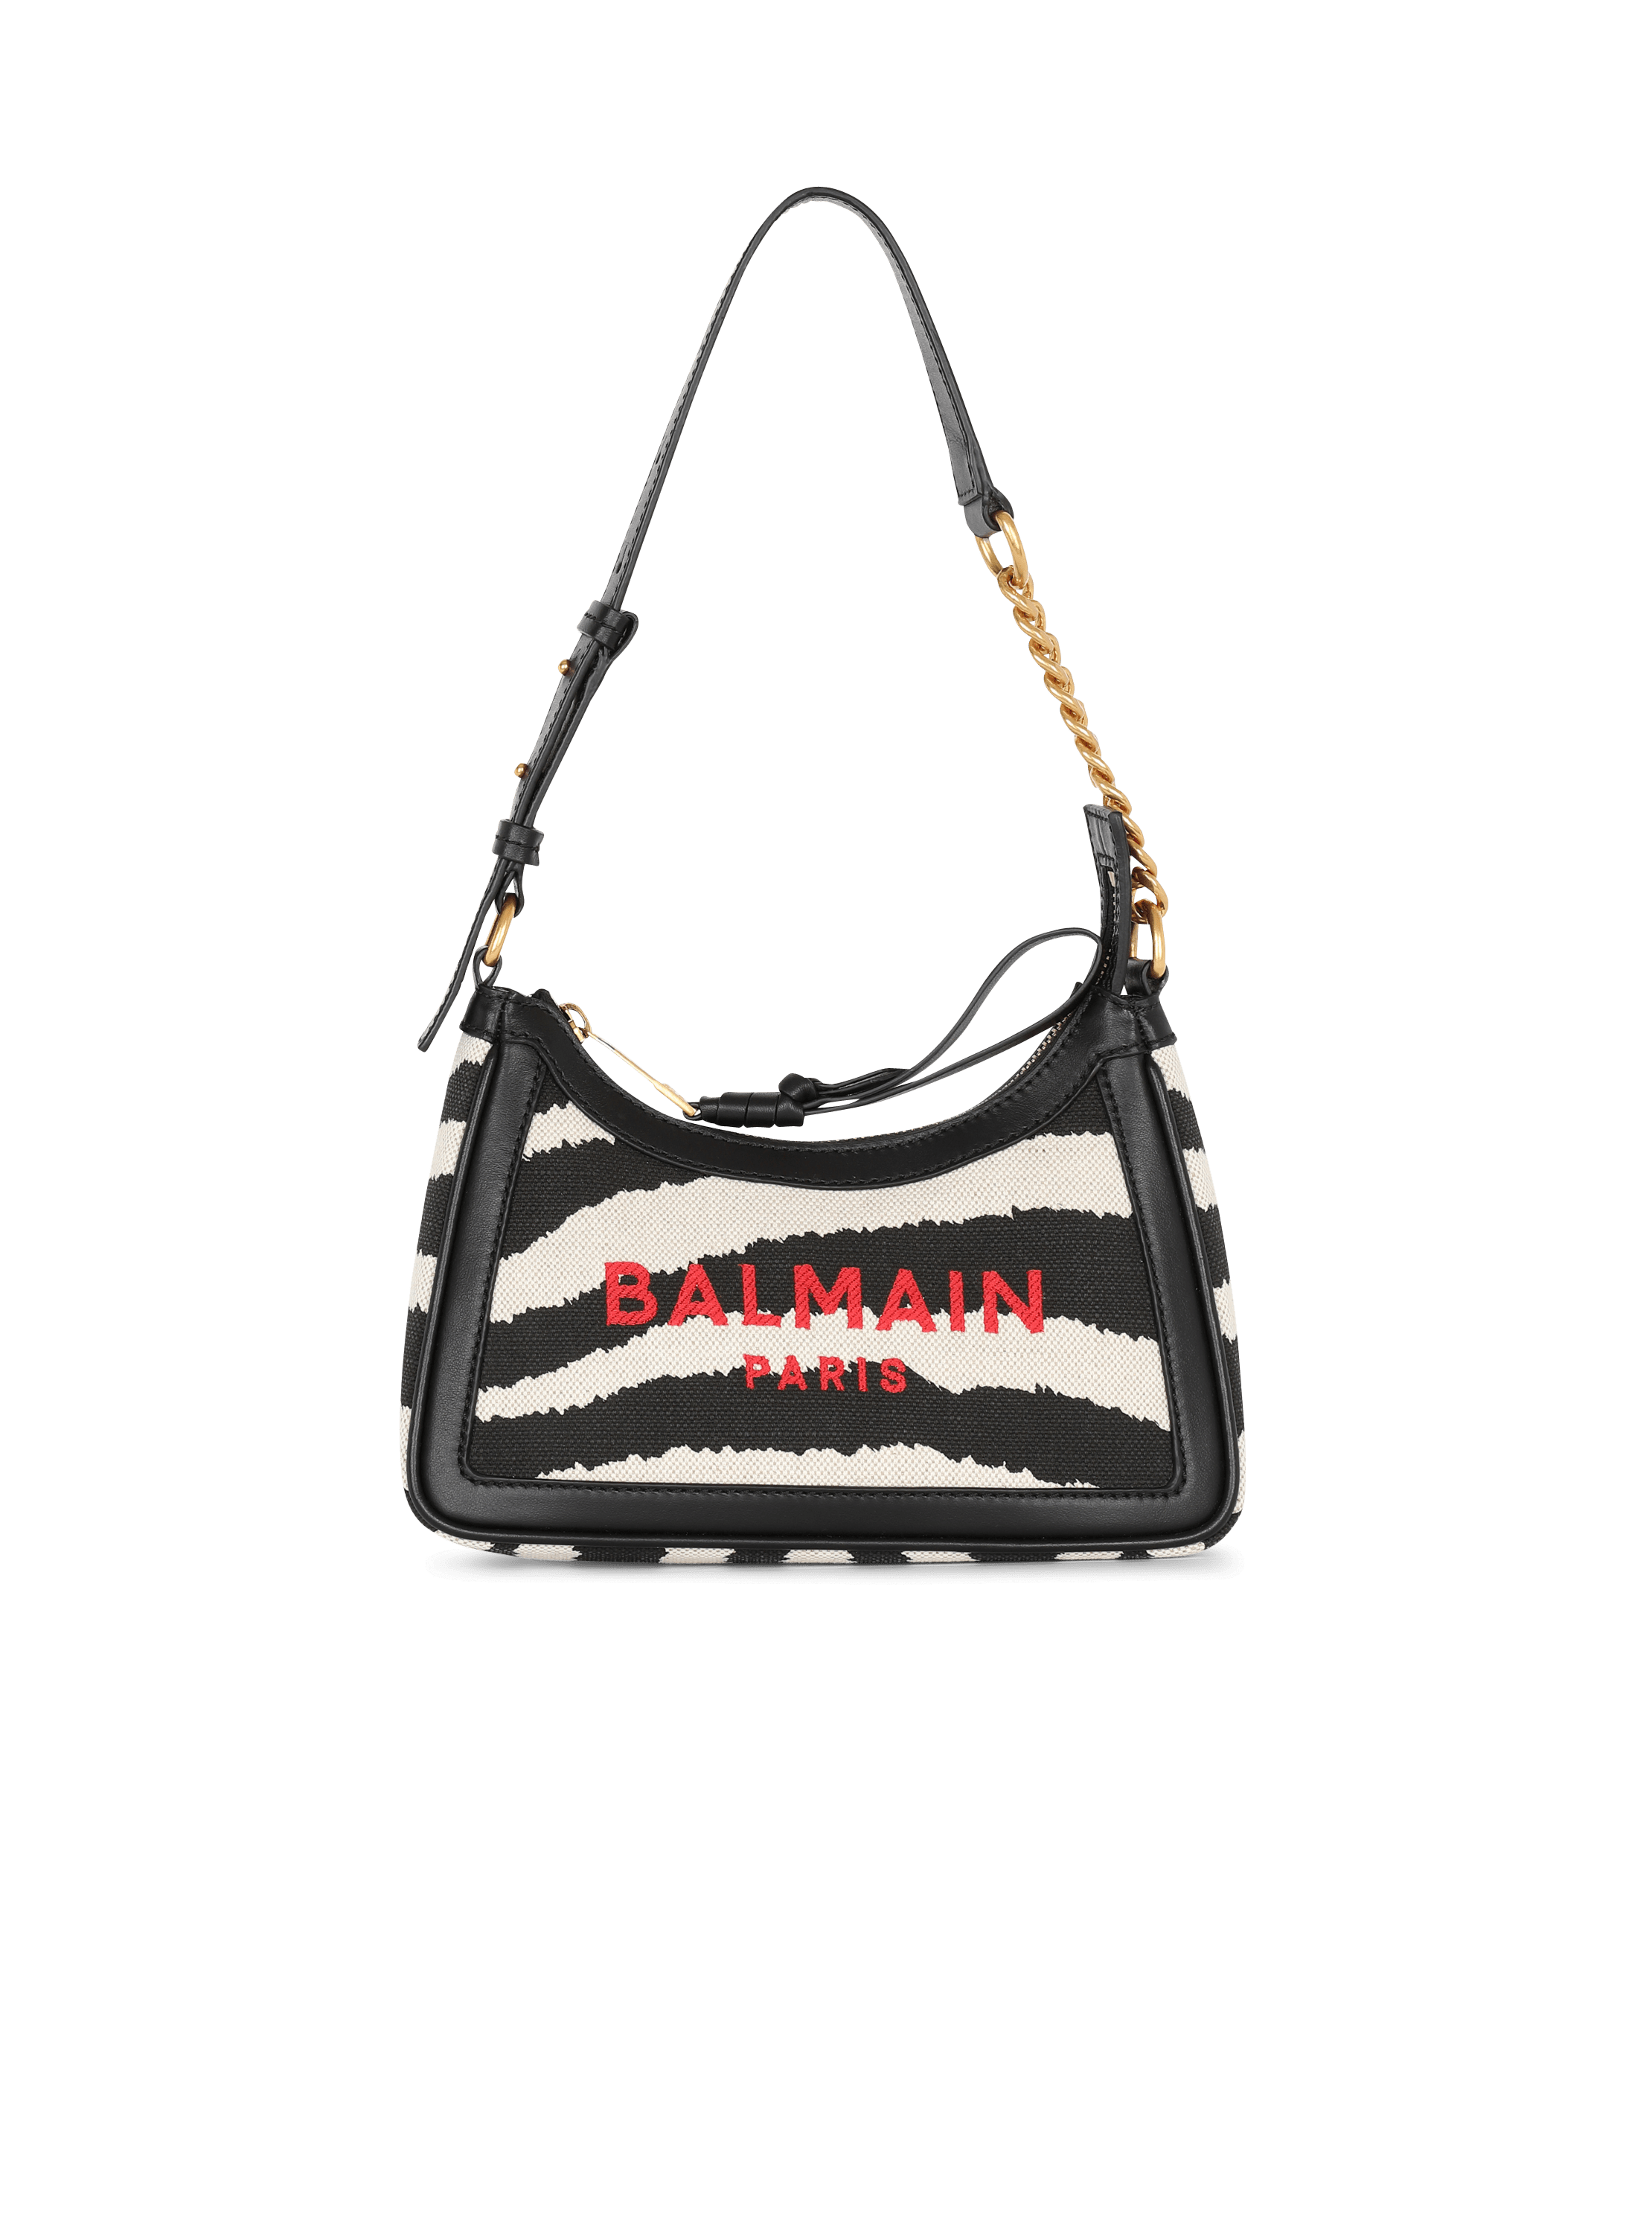 Tasche B-Army aus Canvas mit Zebra-Print und Ledereinsätzen